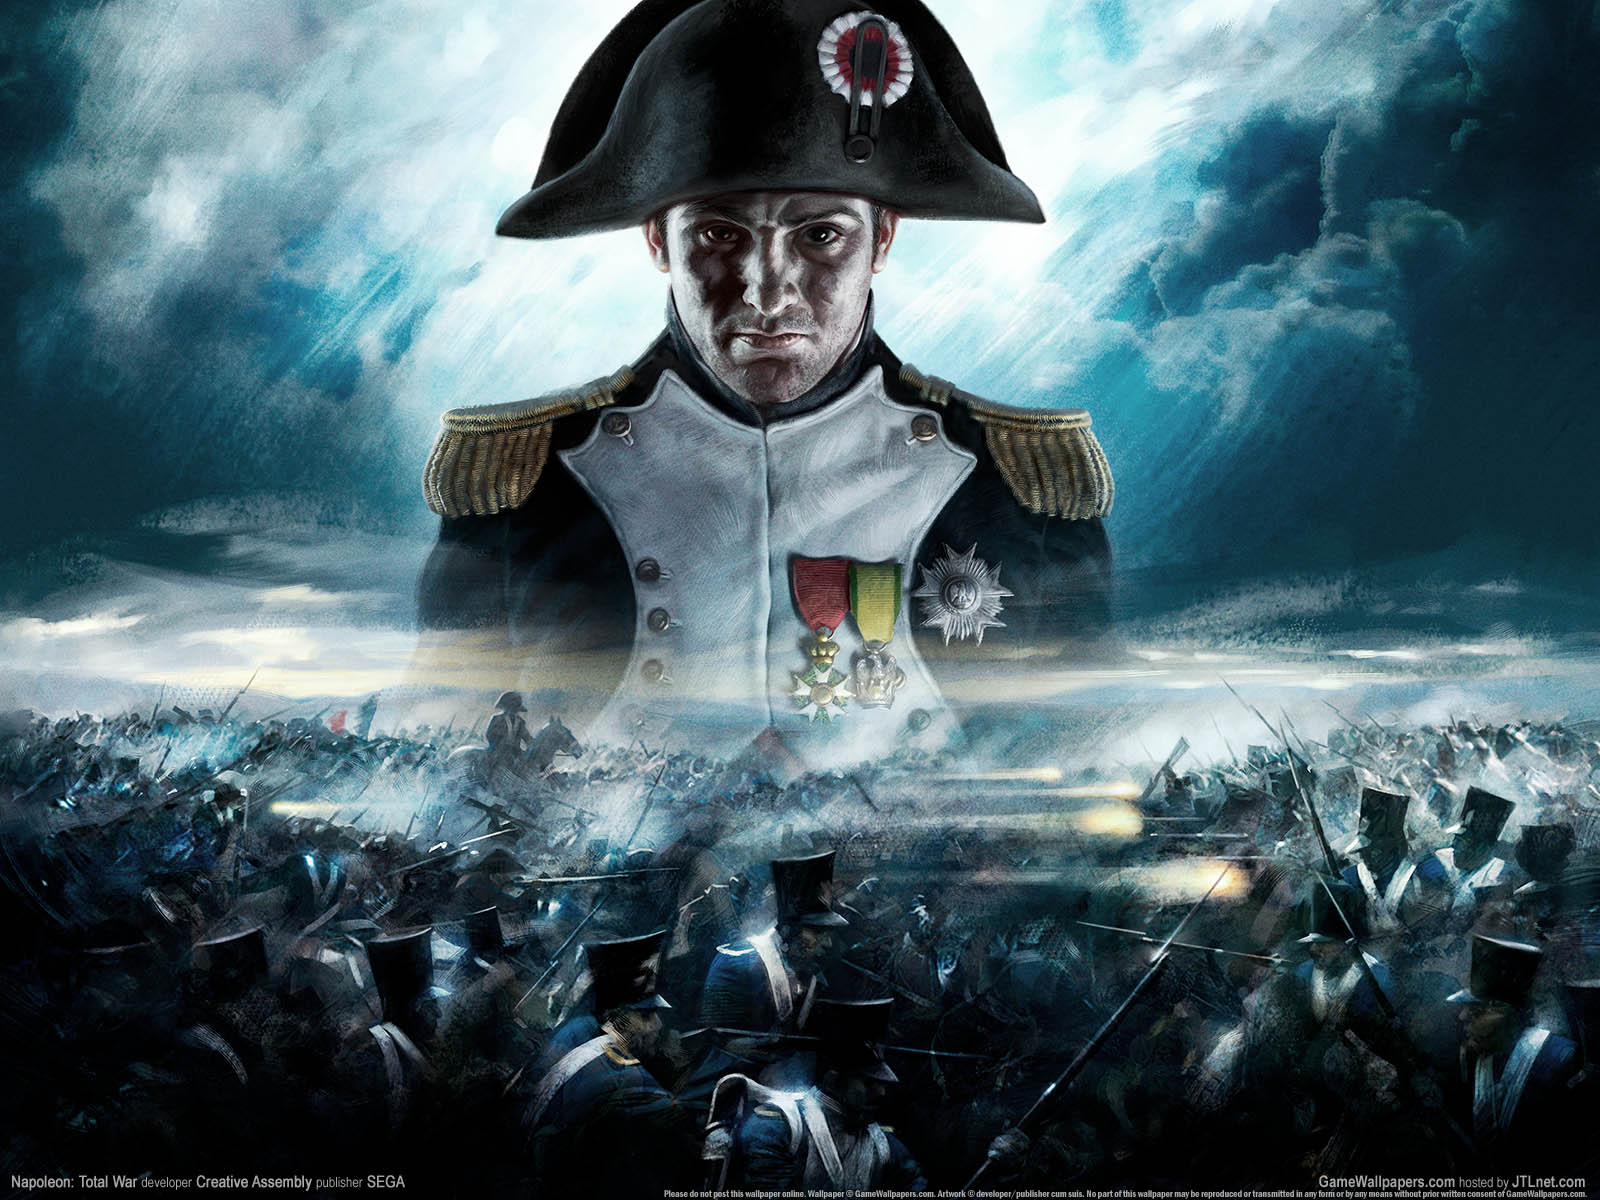 Napoleon%3A Total War fond d'cran 01 1600x1200